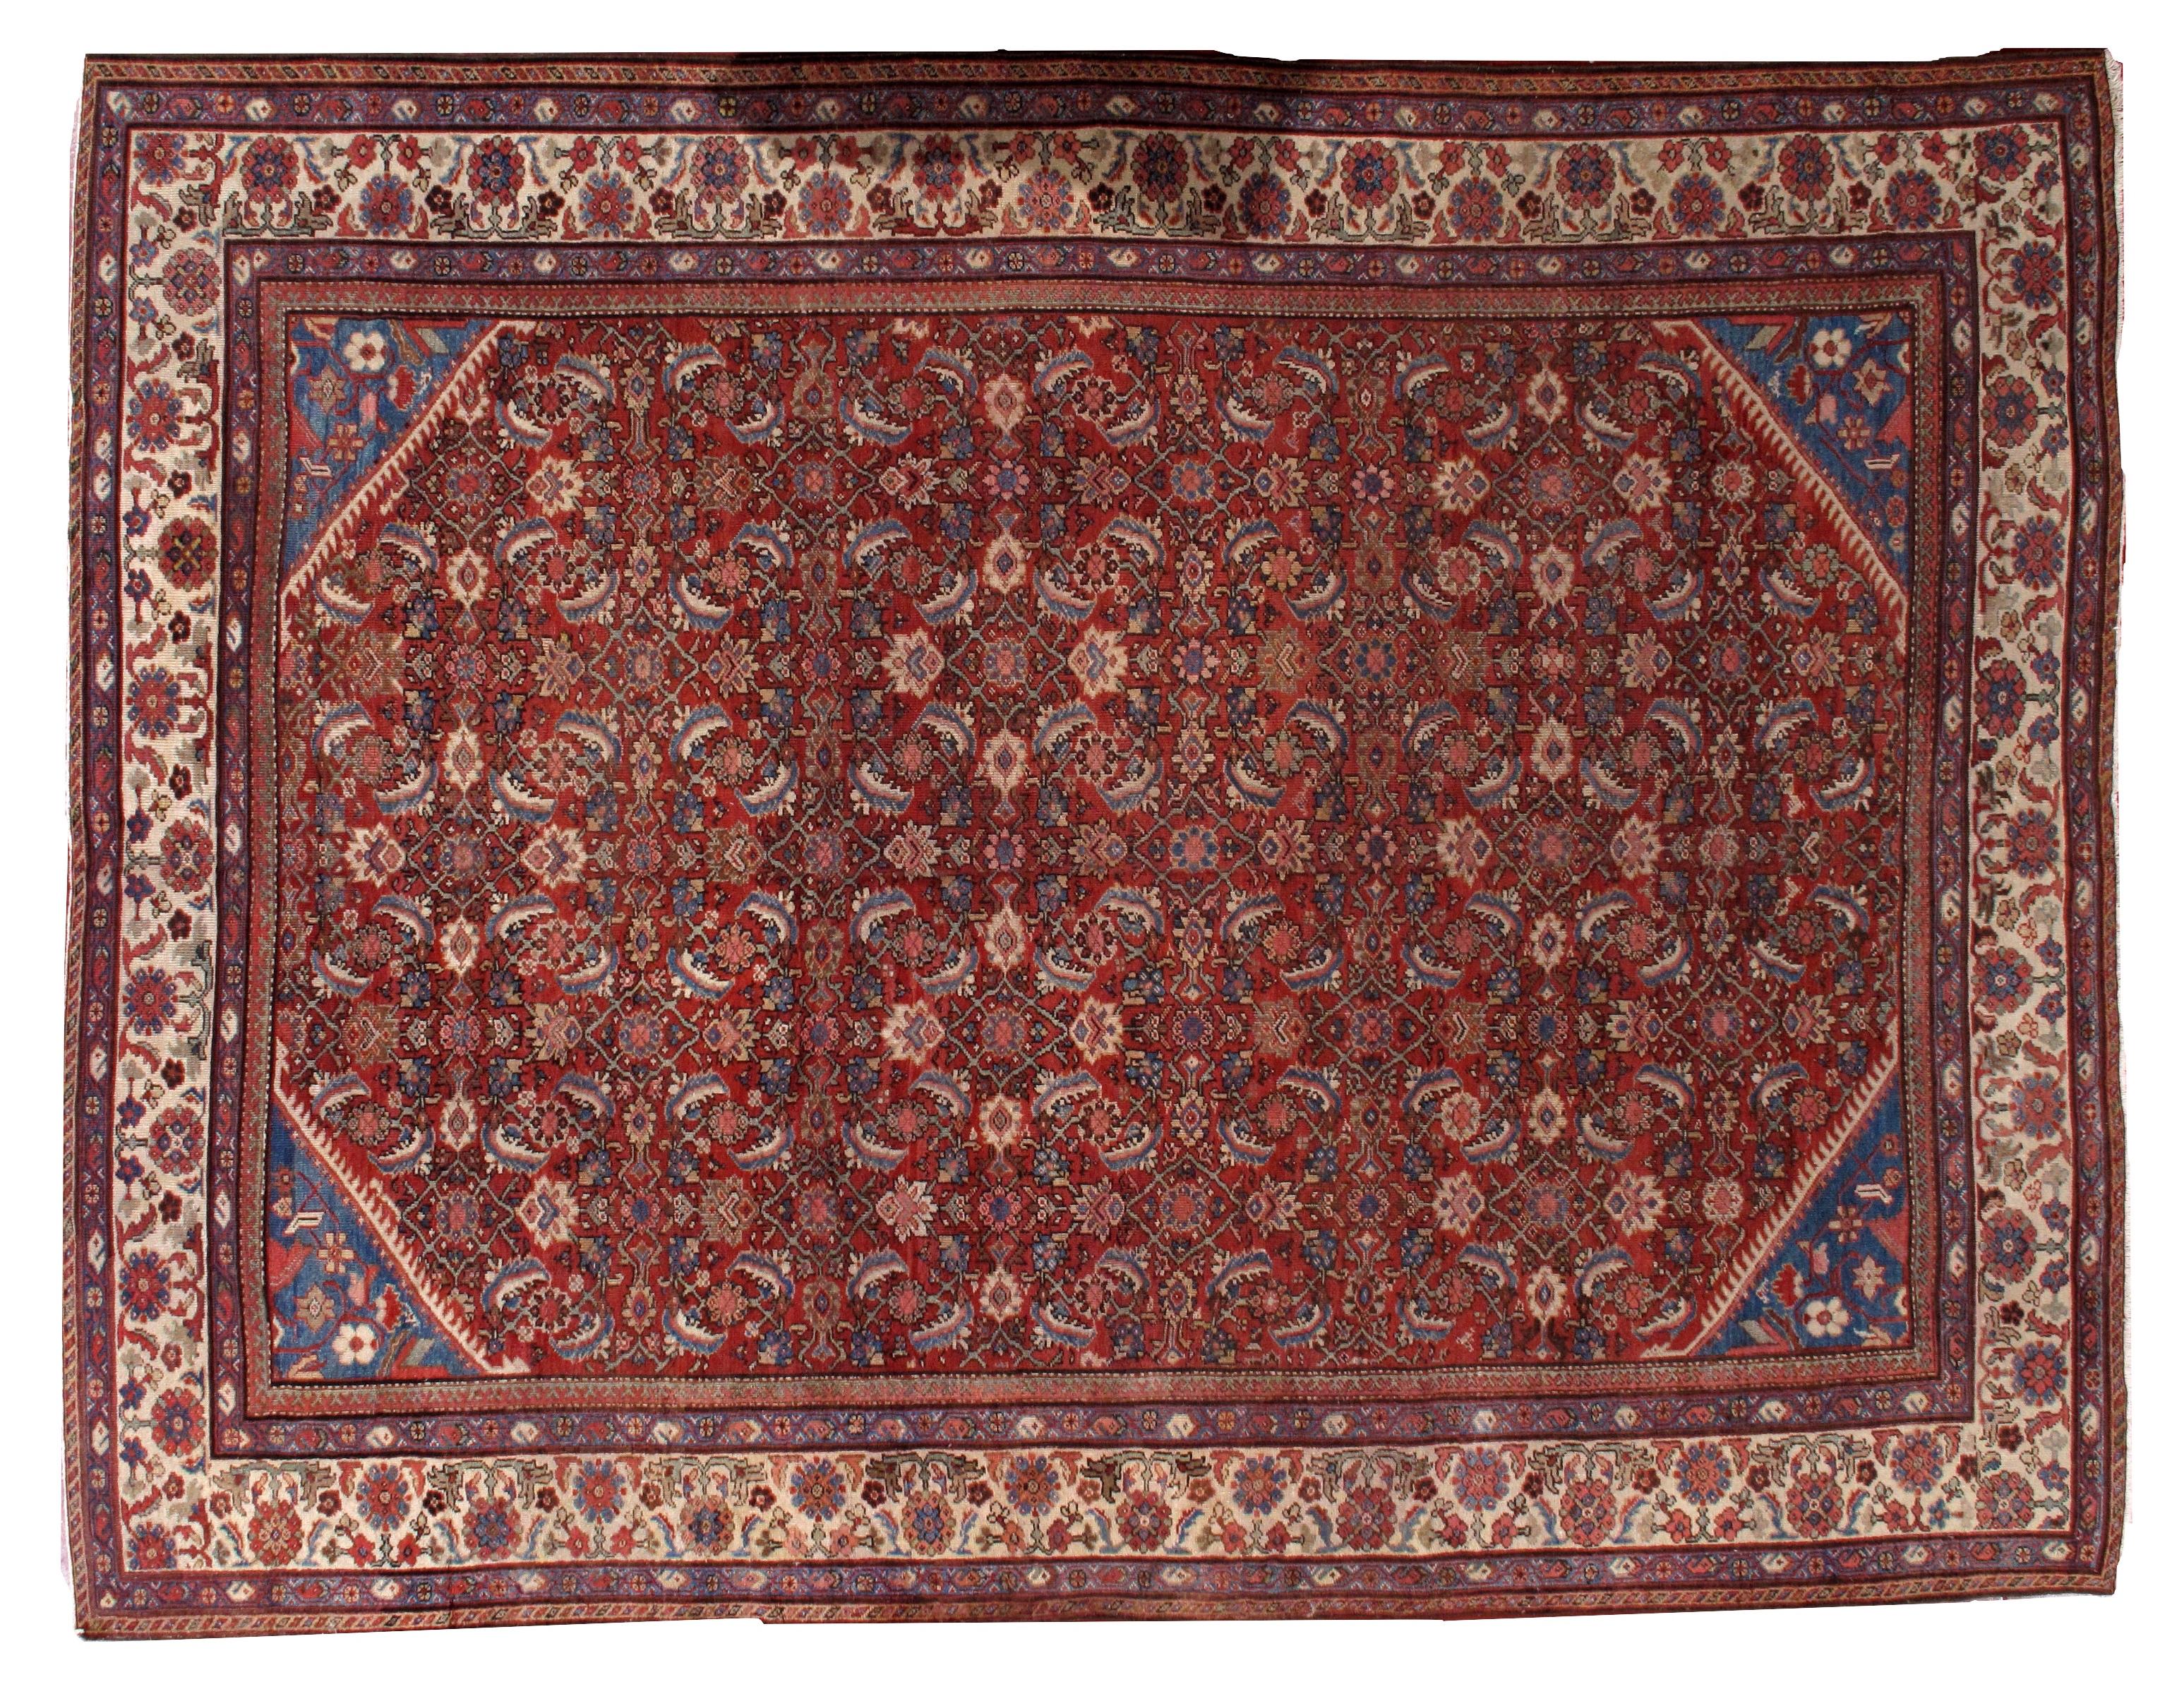 Tapis persan antique Mahal en bon état, couleur rouge vif avec quelques accents bleus et crème.